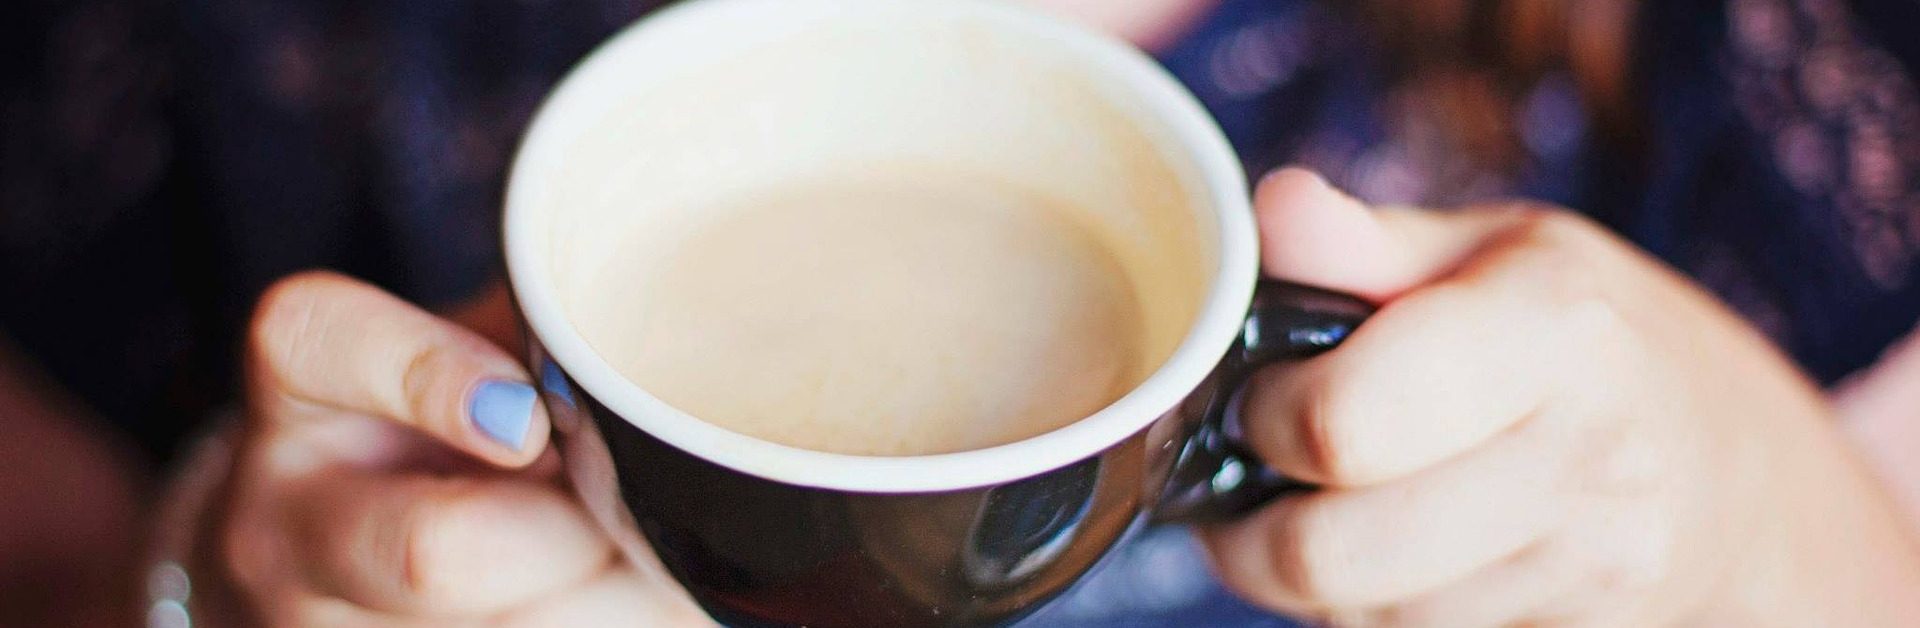 Чай с молоком: чем он полезен, а чем вреден